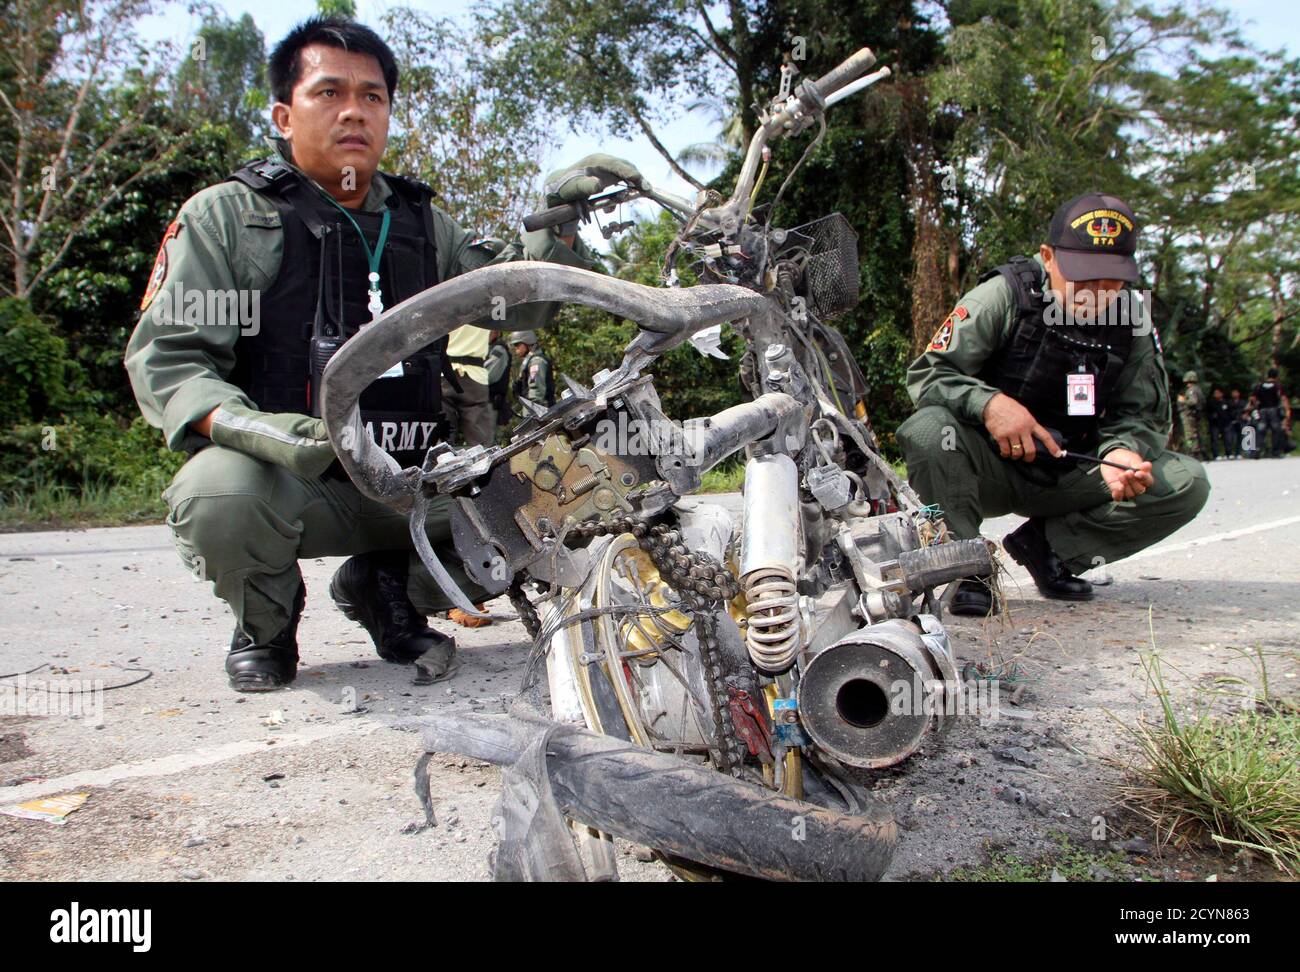 Le personnel de sécurité thaïlandais a effectué une enquête sur le site d'une bombe à moto sur un bord de route dans la province de Pattani, dans le sud de la Thaïlande, au sud de Bangkok, le 12 mars 2012. Deux soldats ont été blessés par une explosion de bombes tout en assurant la sécurité des enseignants dans le district de Sai Buri de Pattani, selon les médias locaux. REUTERS/Surapan Boonthanom (THAÏLANDE - Tags: TROUBLES CIVILS CRIME DROIT POLITIQUE) Banque D'Images